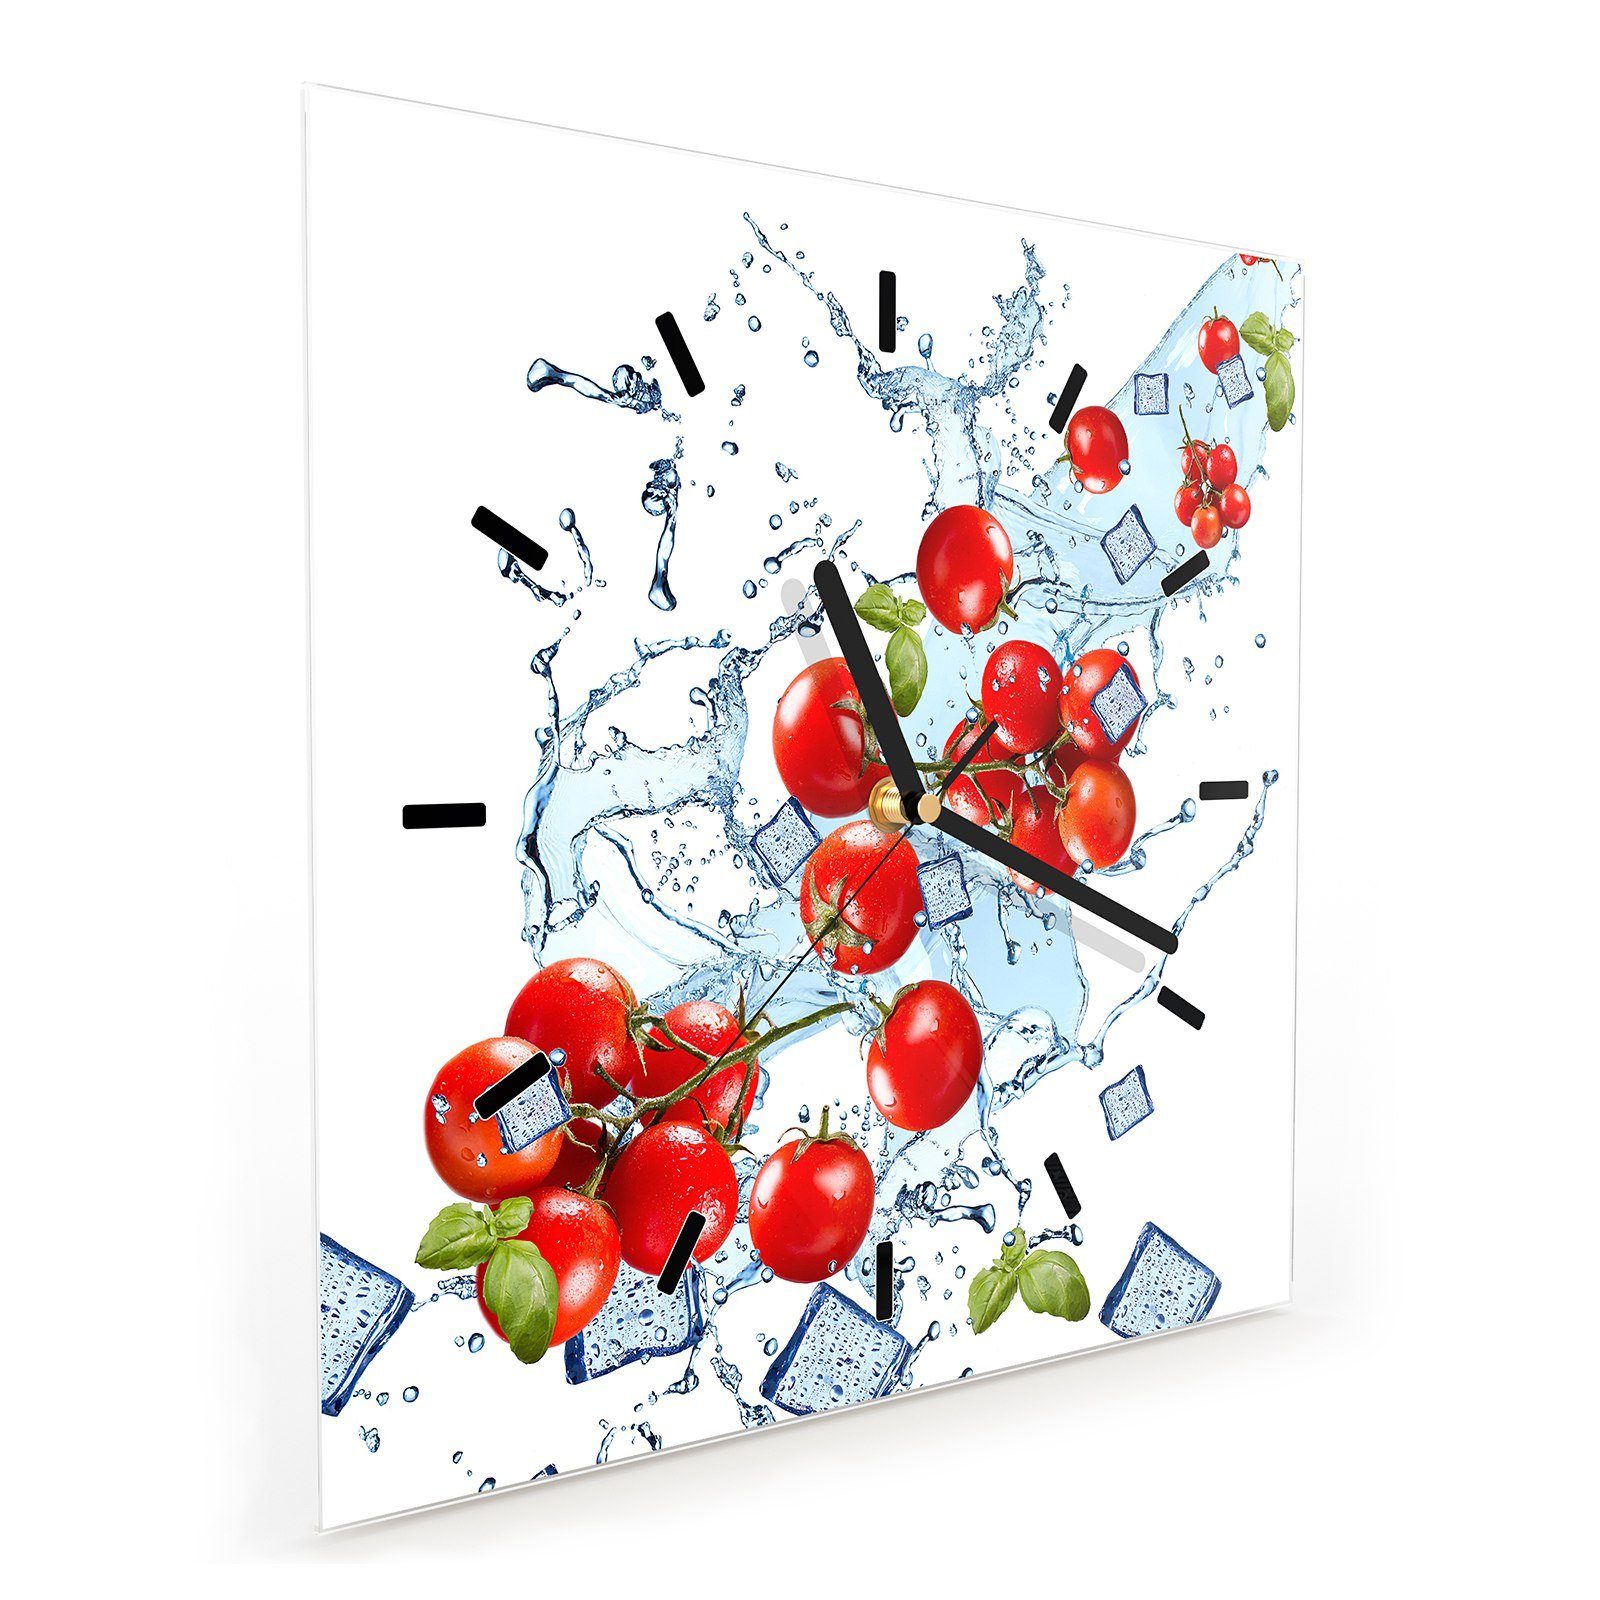 auf Wasserwelle x cm Wanduhr mit Glasuhr Wandkunst 30 Primedeco Tomaten Wanduhr Größe 30 Motiv